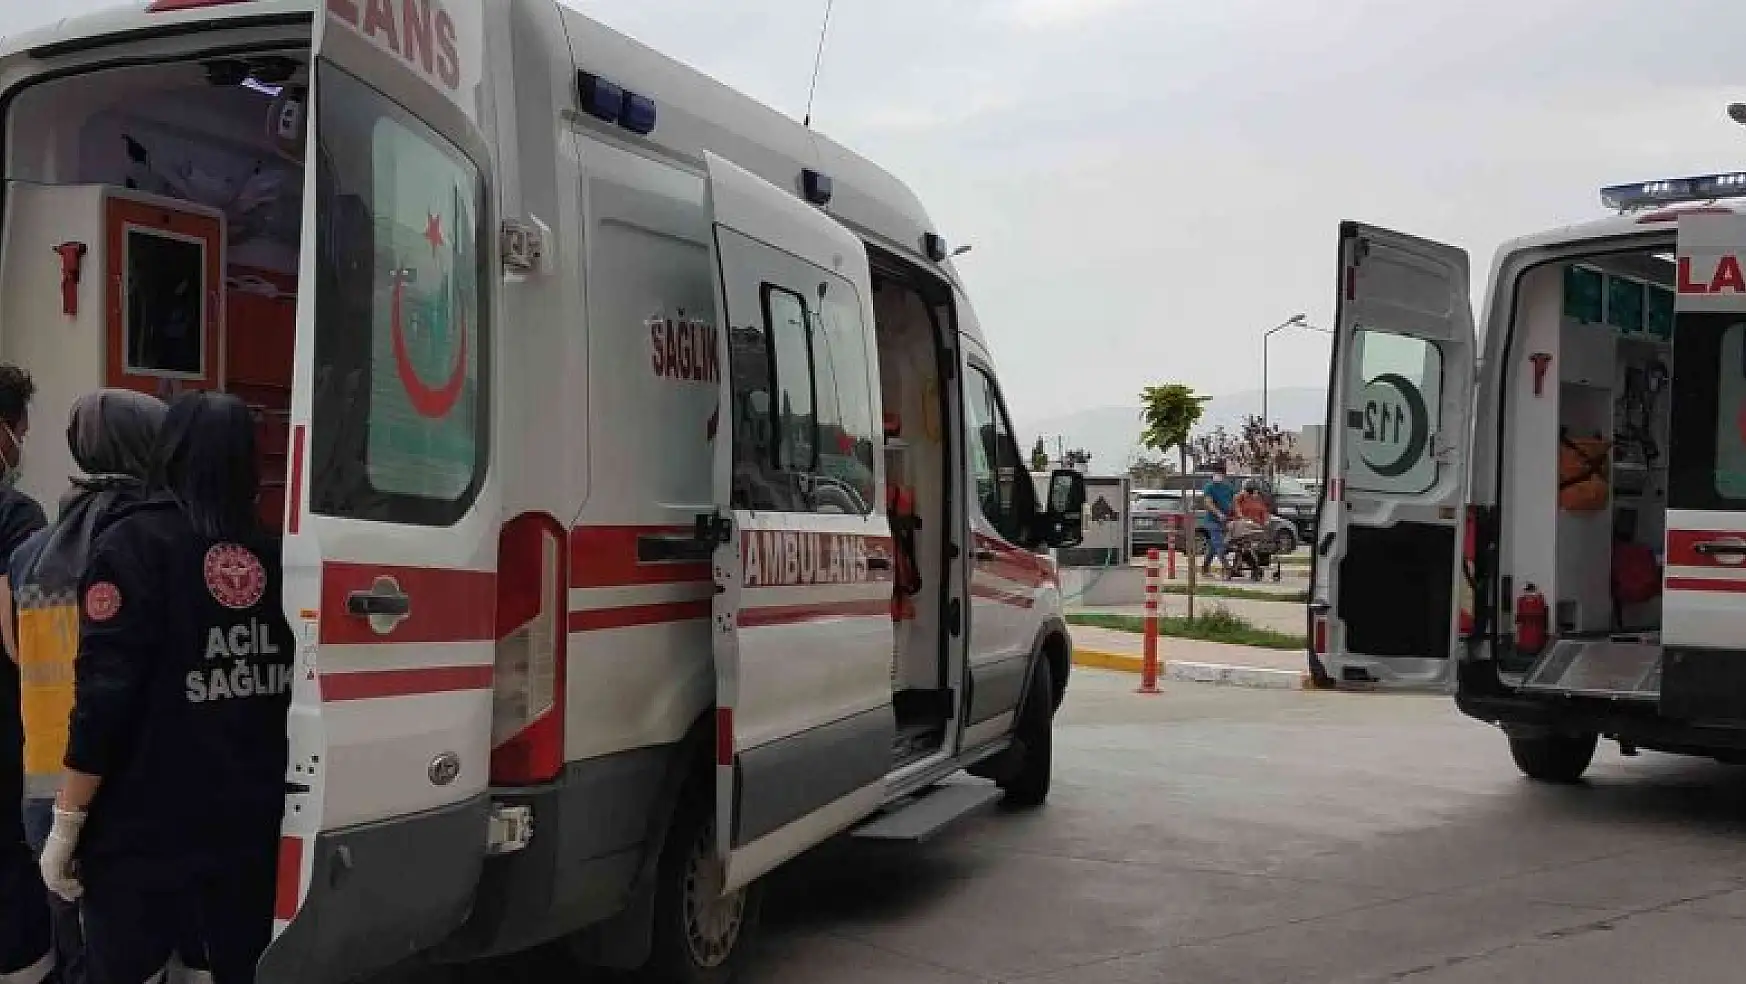 İliç- Refahiye kara yolunda trafik kazası: 5 yaralı